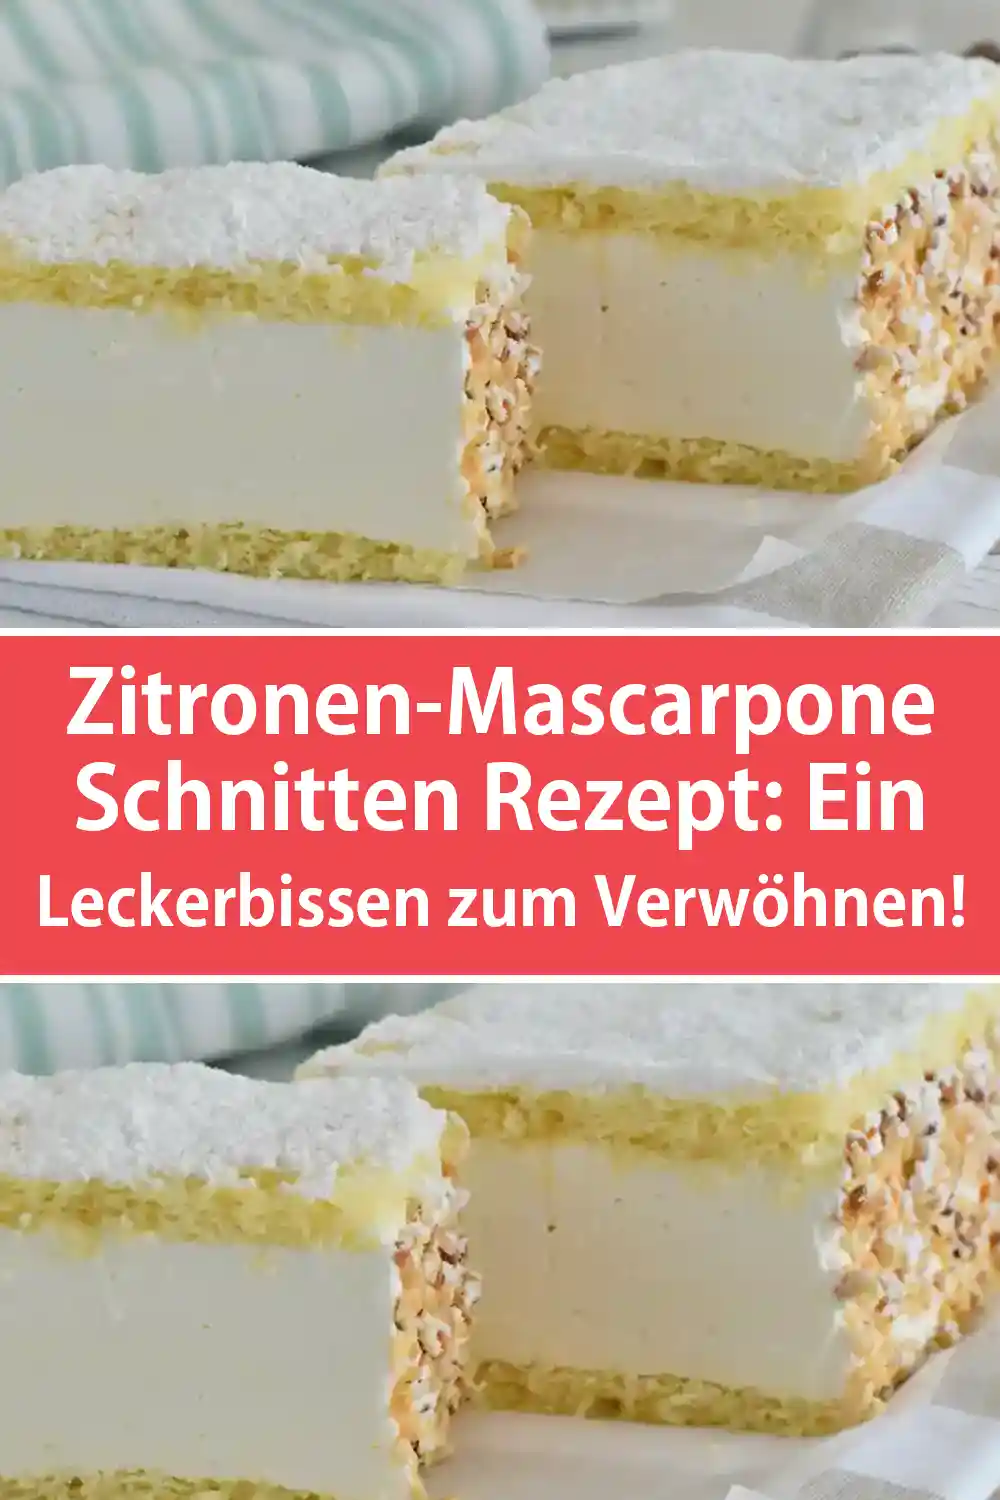 Zitronen-Mascarpone Schnitten Rezept: Ein Leckerbissen zum Verwöhnen!